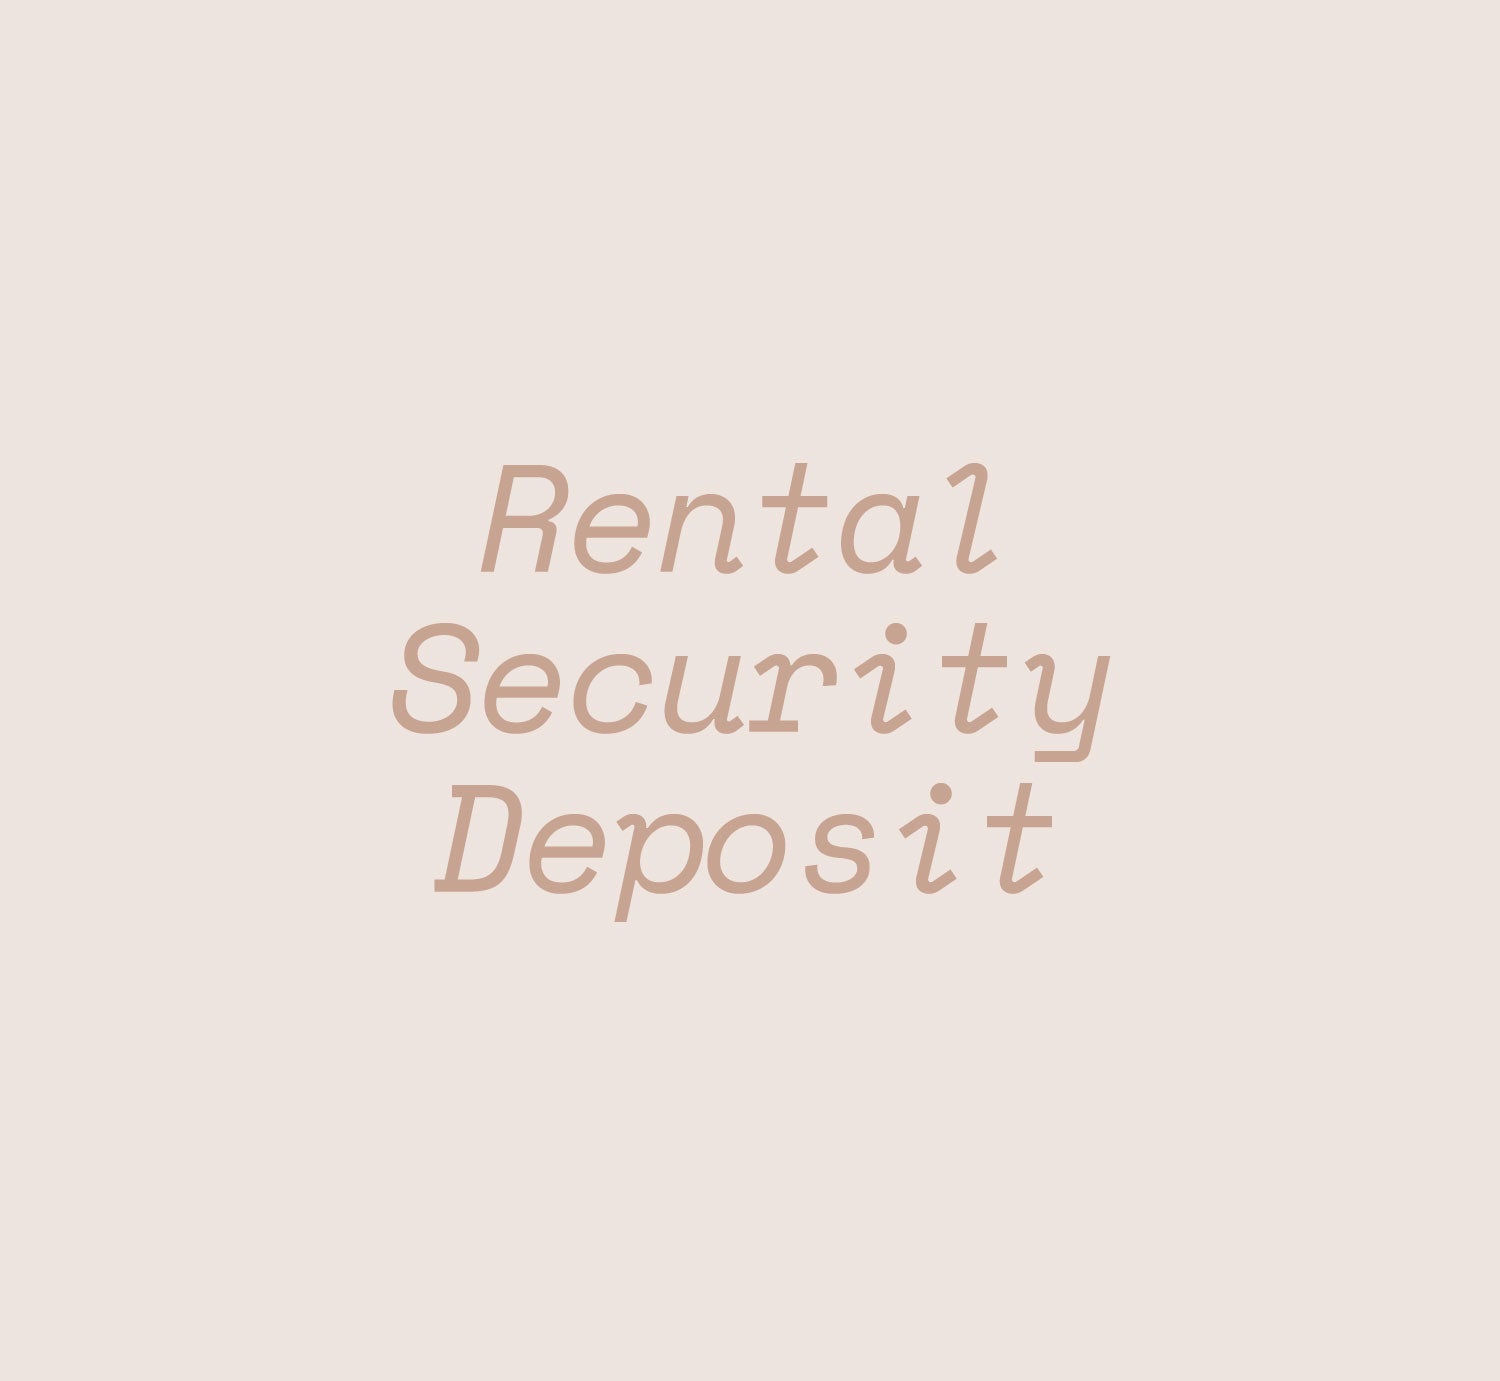 Rental Security Deposit - Rehaus